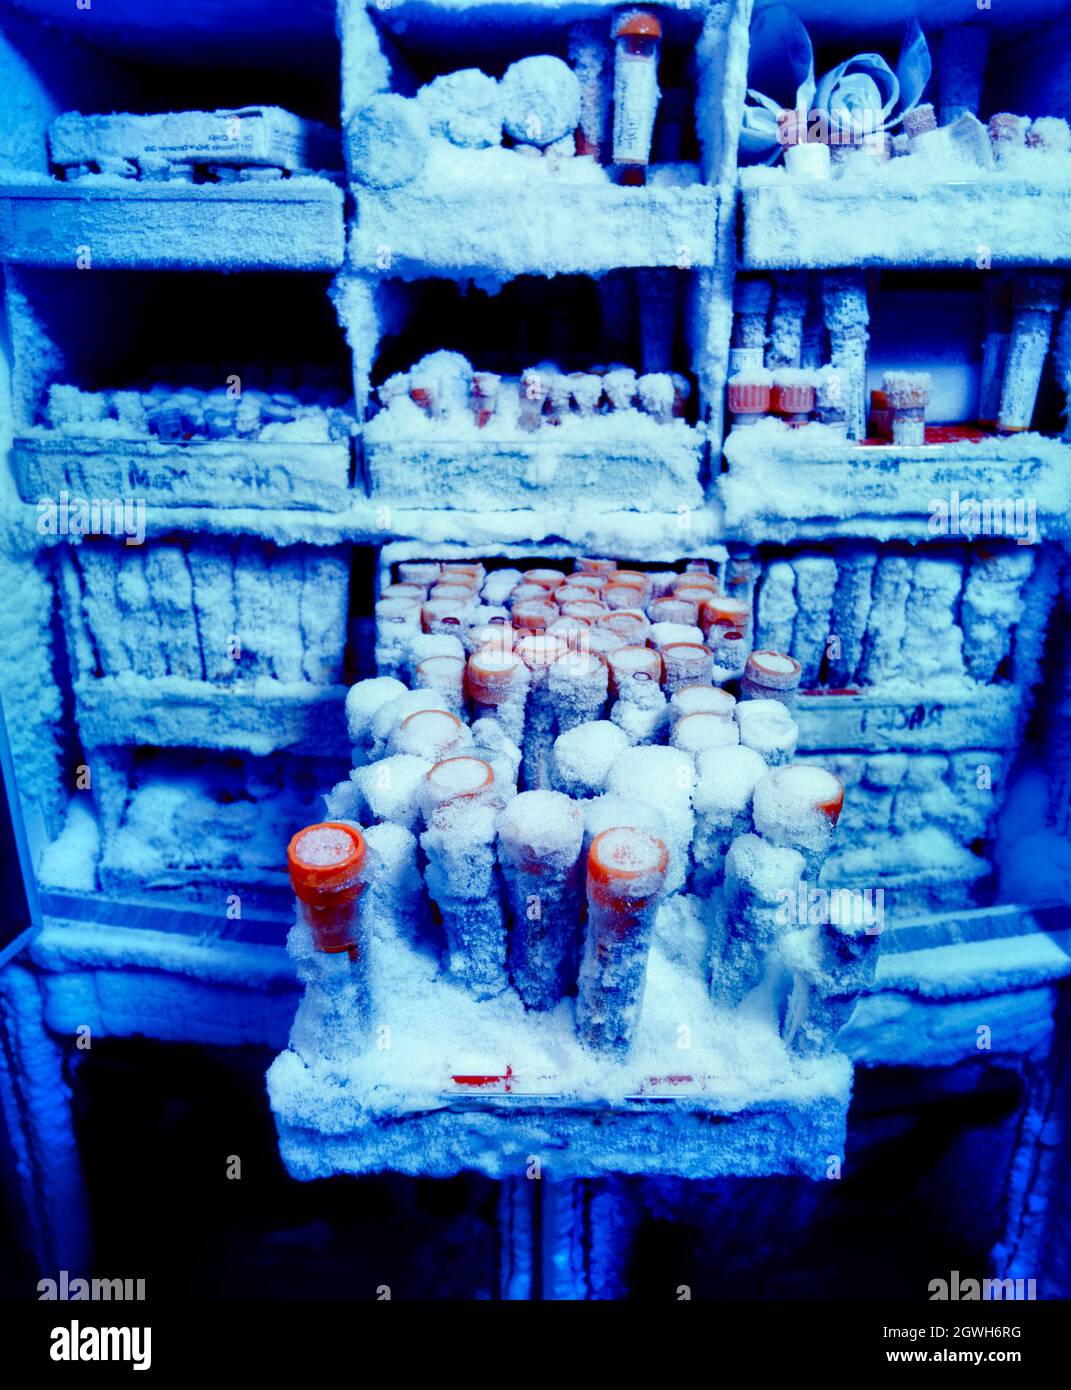 Muestras de sangre de investigación médica en congelador Foto de stock